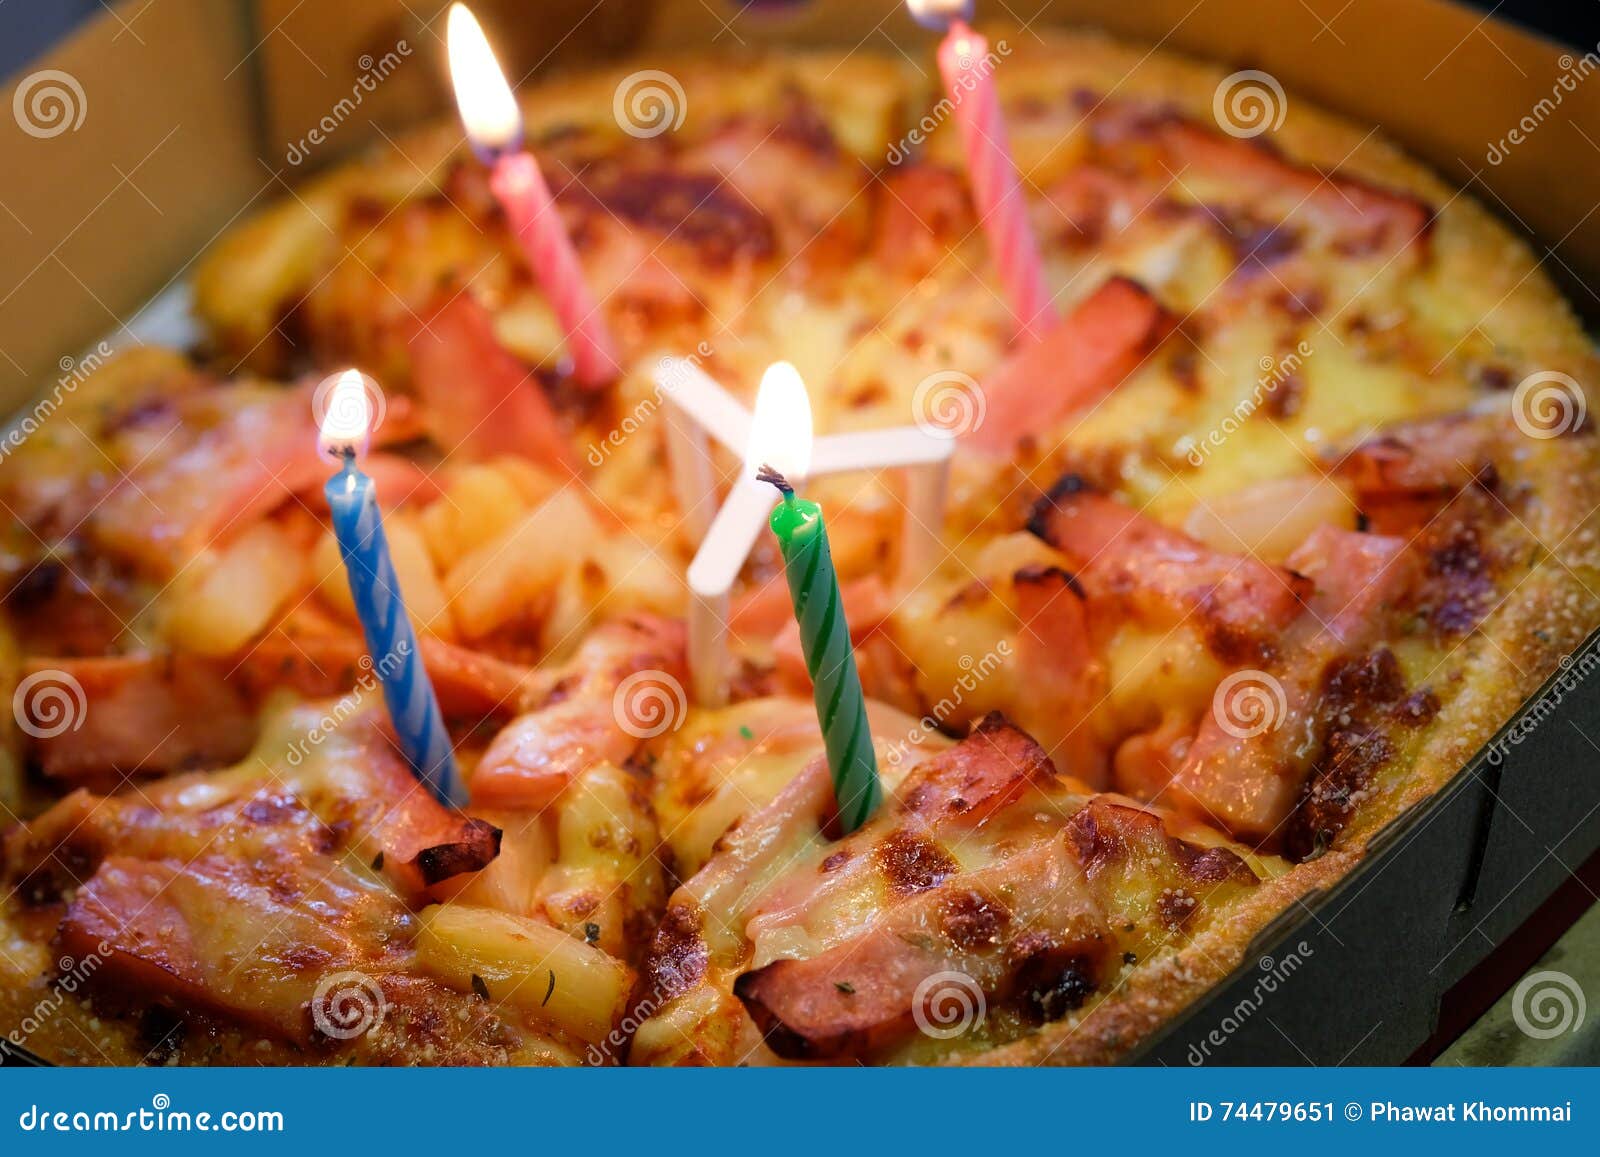 Пицца С Днем Рождения Фото